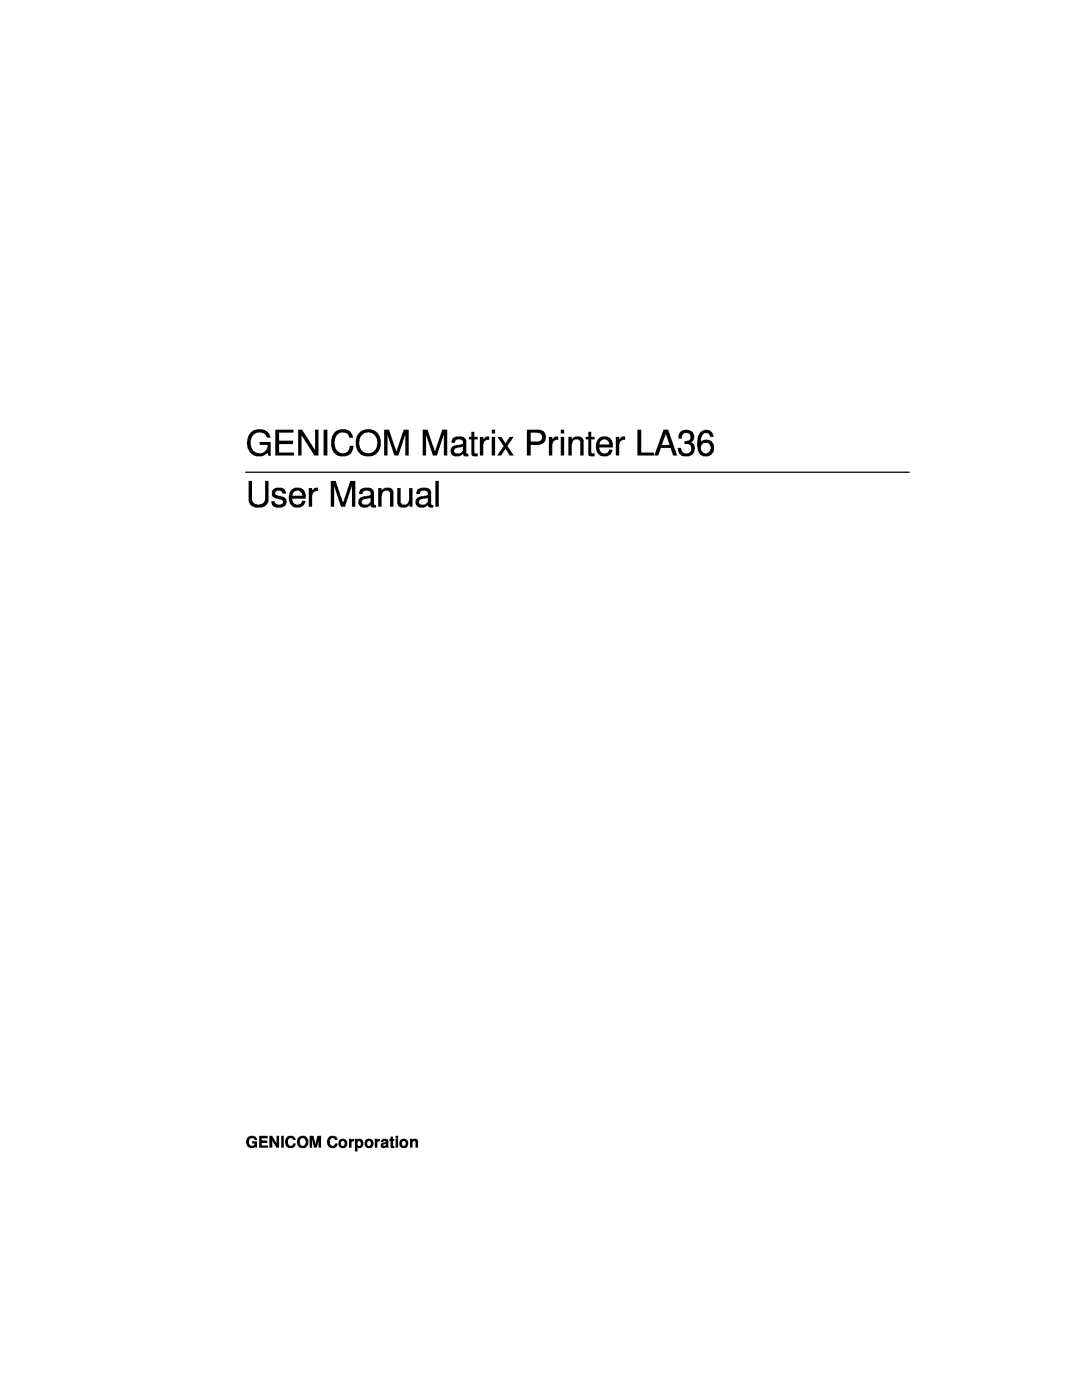 Genicom manual GENICOM Matrix Printer LA36 User Manual, GENICOM Corporation 